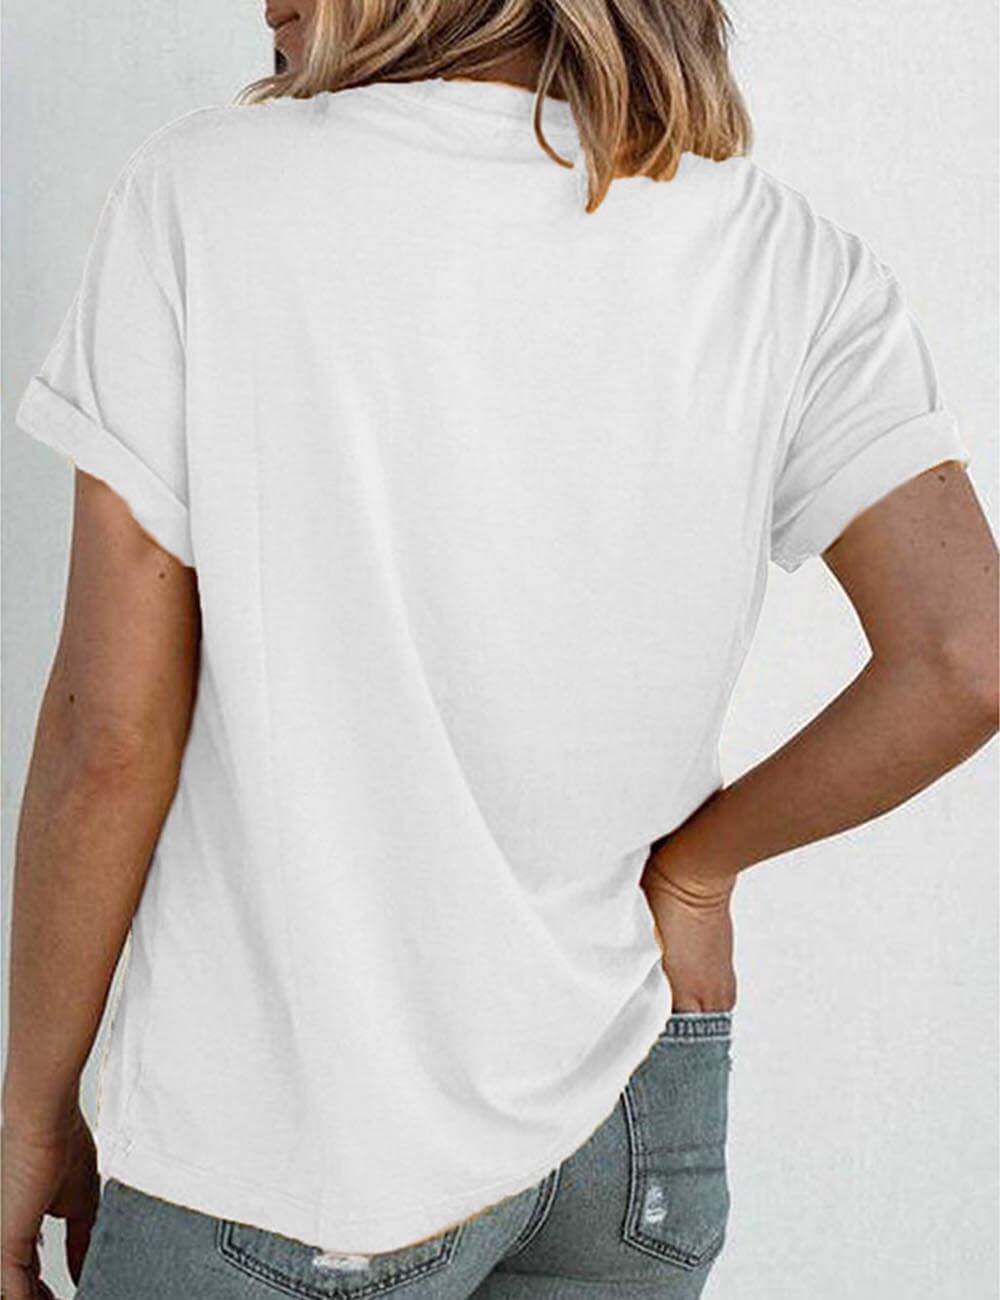  Women‘s Casual Crewneck Giraffe Graphic Printed T Shirt Summer Short Sleeve Shirt Tops